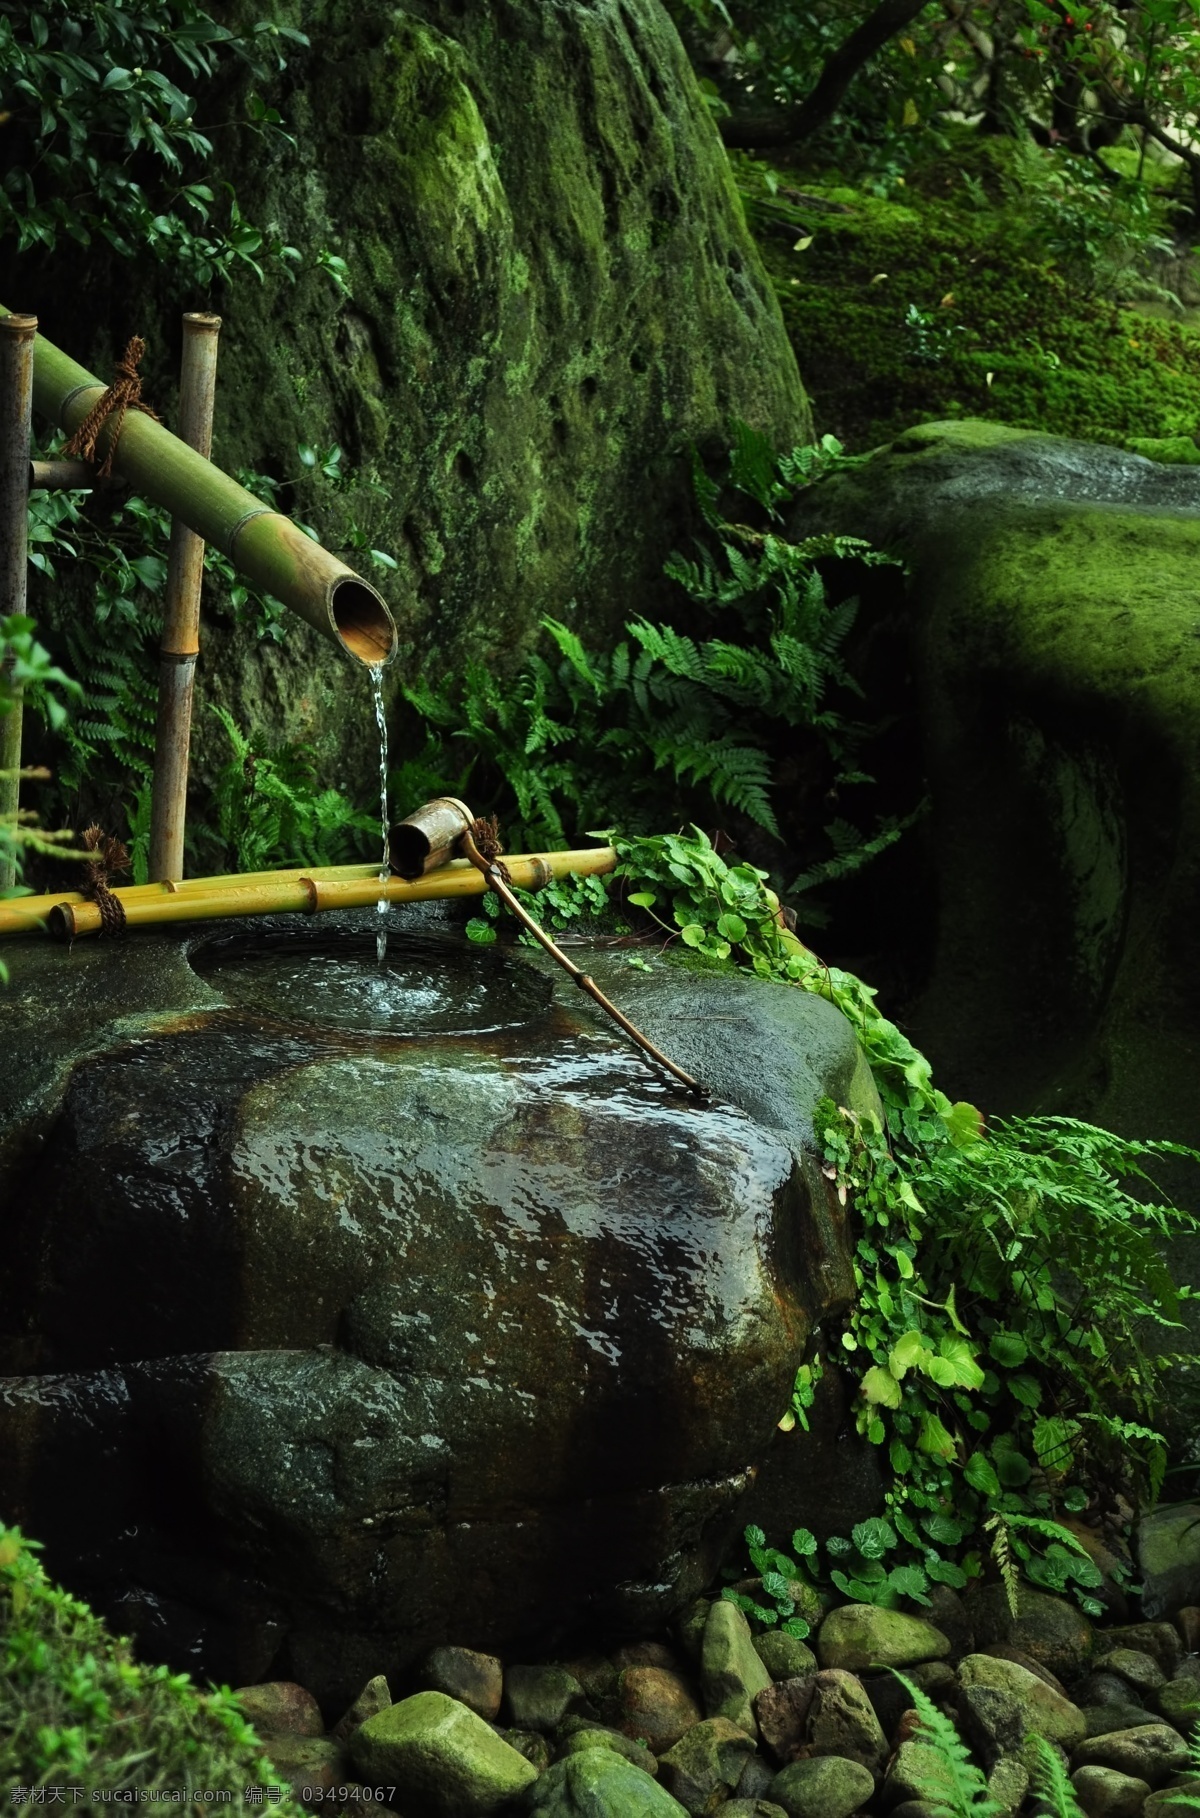 青苔 竹筒 流水 石头 景色 植物绿化 乡下风景 旅游风景 自然景观 自然风景